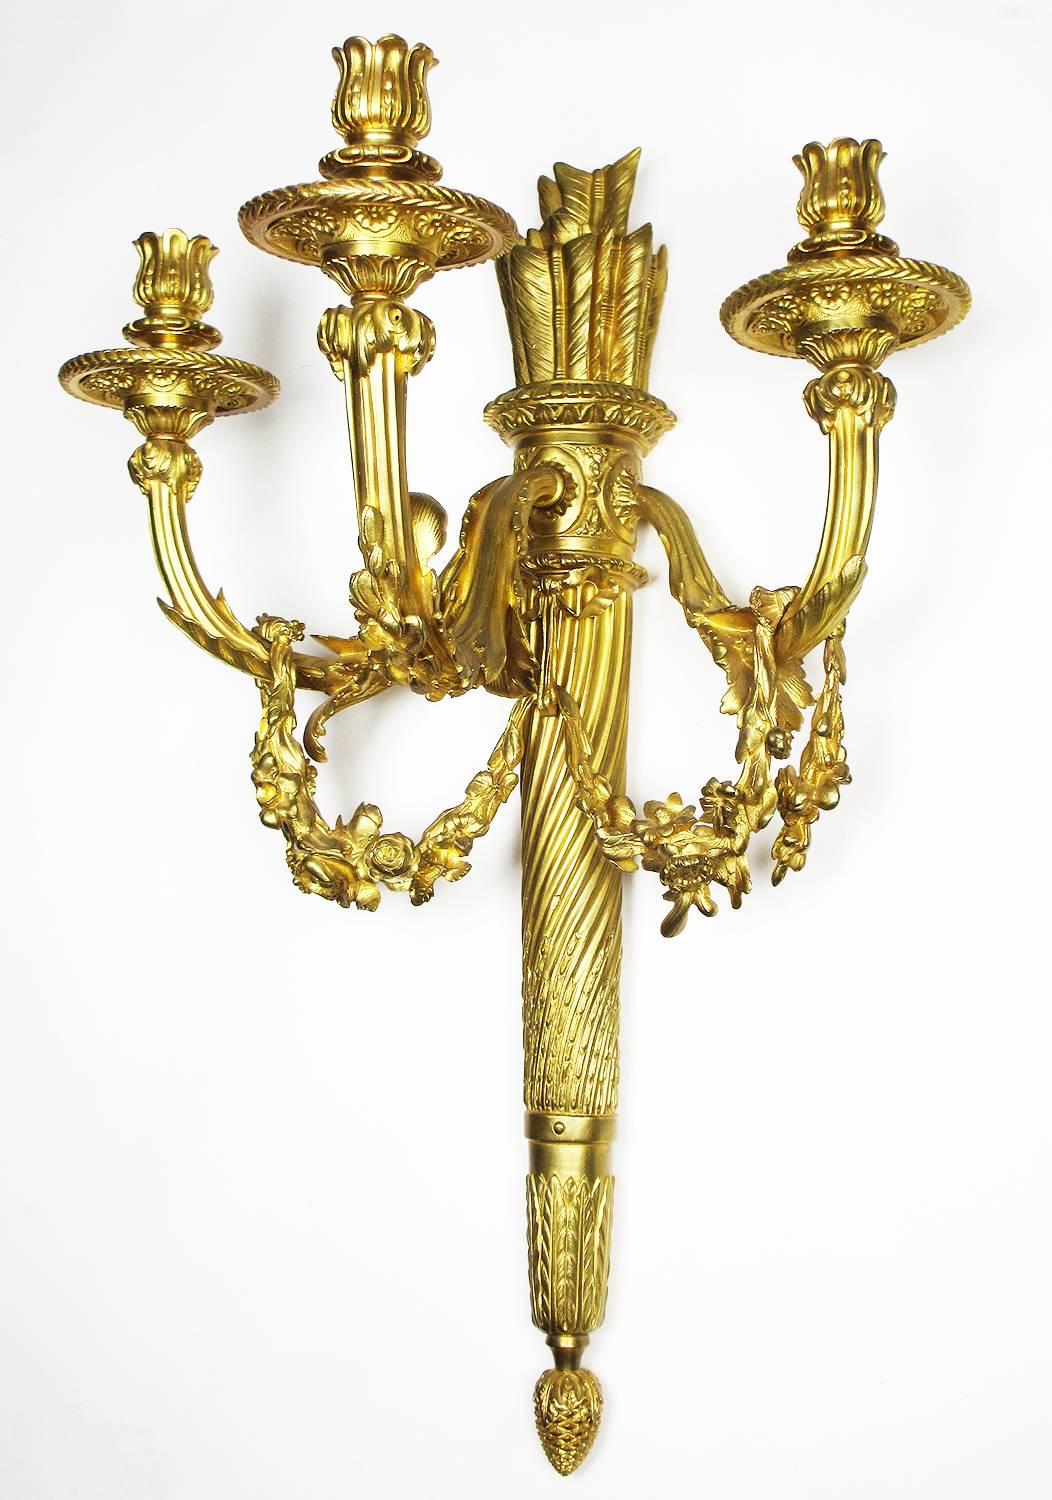 Ein sehr schönes Paar französischer vergoldeter Bronzewandleuchter im Louis-XVI-Stil des 19. und 20. Jahrhunderts in Form von Fackeln mit Blumenranken über jedem Kerzenarm, um 1900, Paris.

Höhe: 23 Zoll (58,4 cm).
Breite: 16 1/2 Zoll (41,9